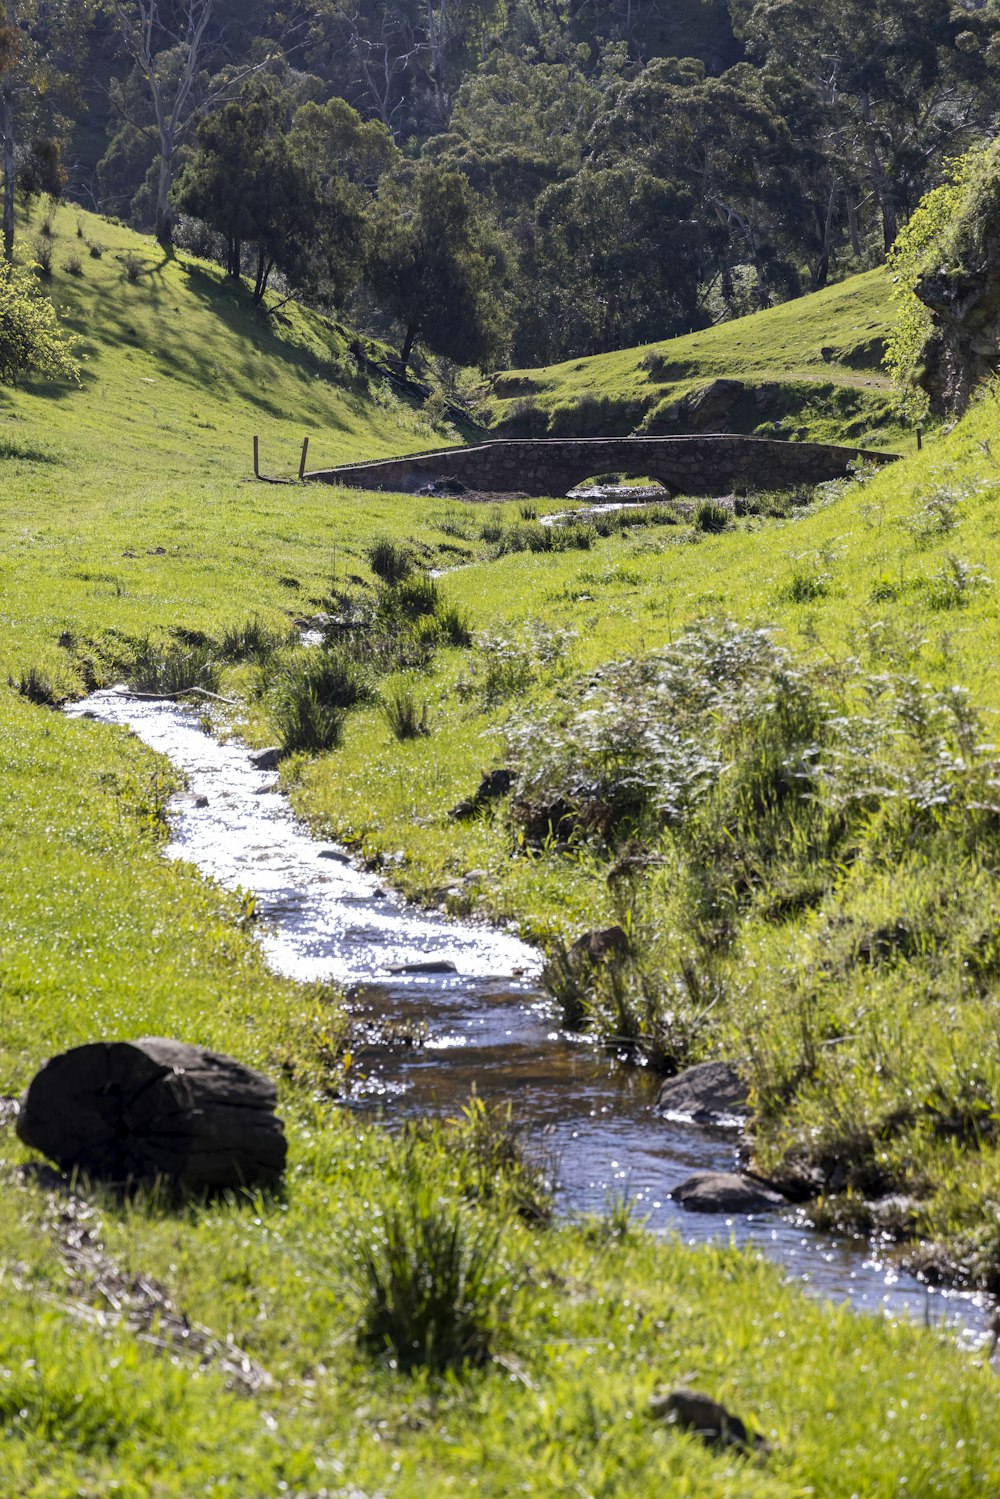 a stream running through a lush green field